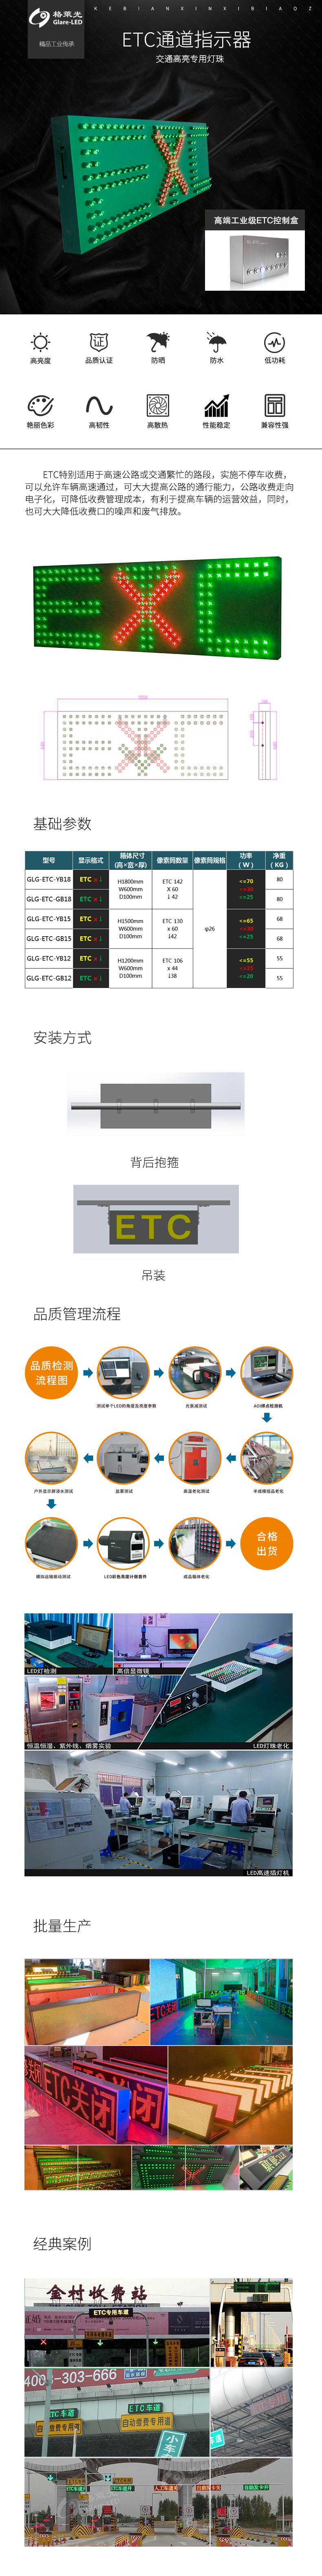 ETC通道指示器.jpg